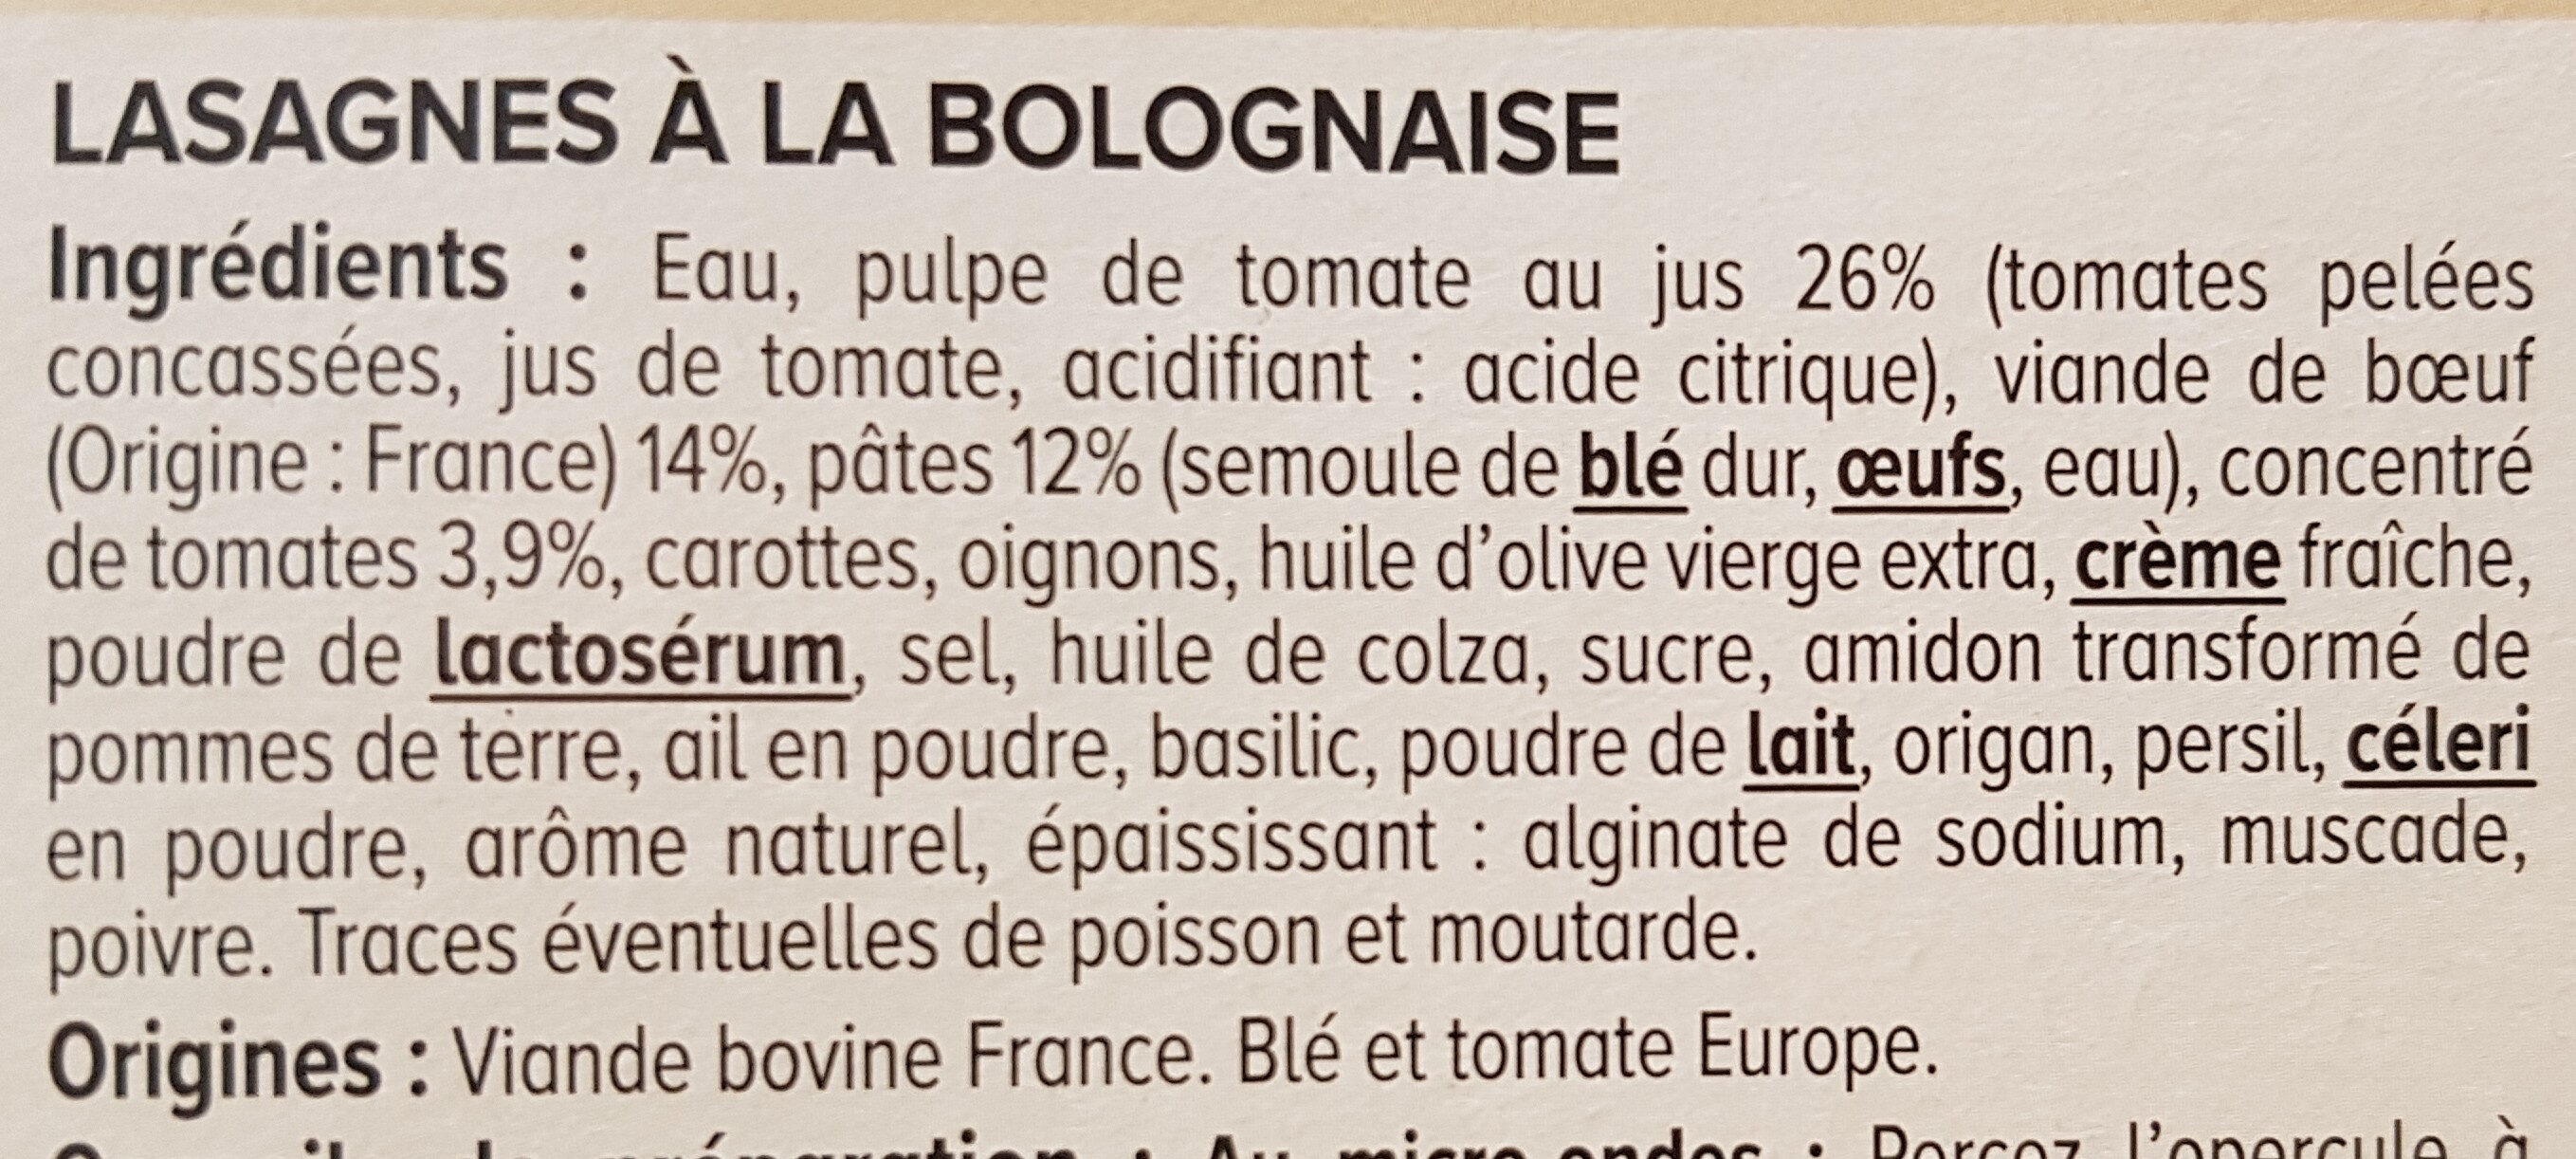 Lasagnes à la bolognaise - Ingrédients